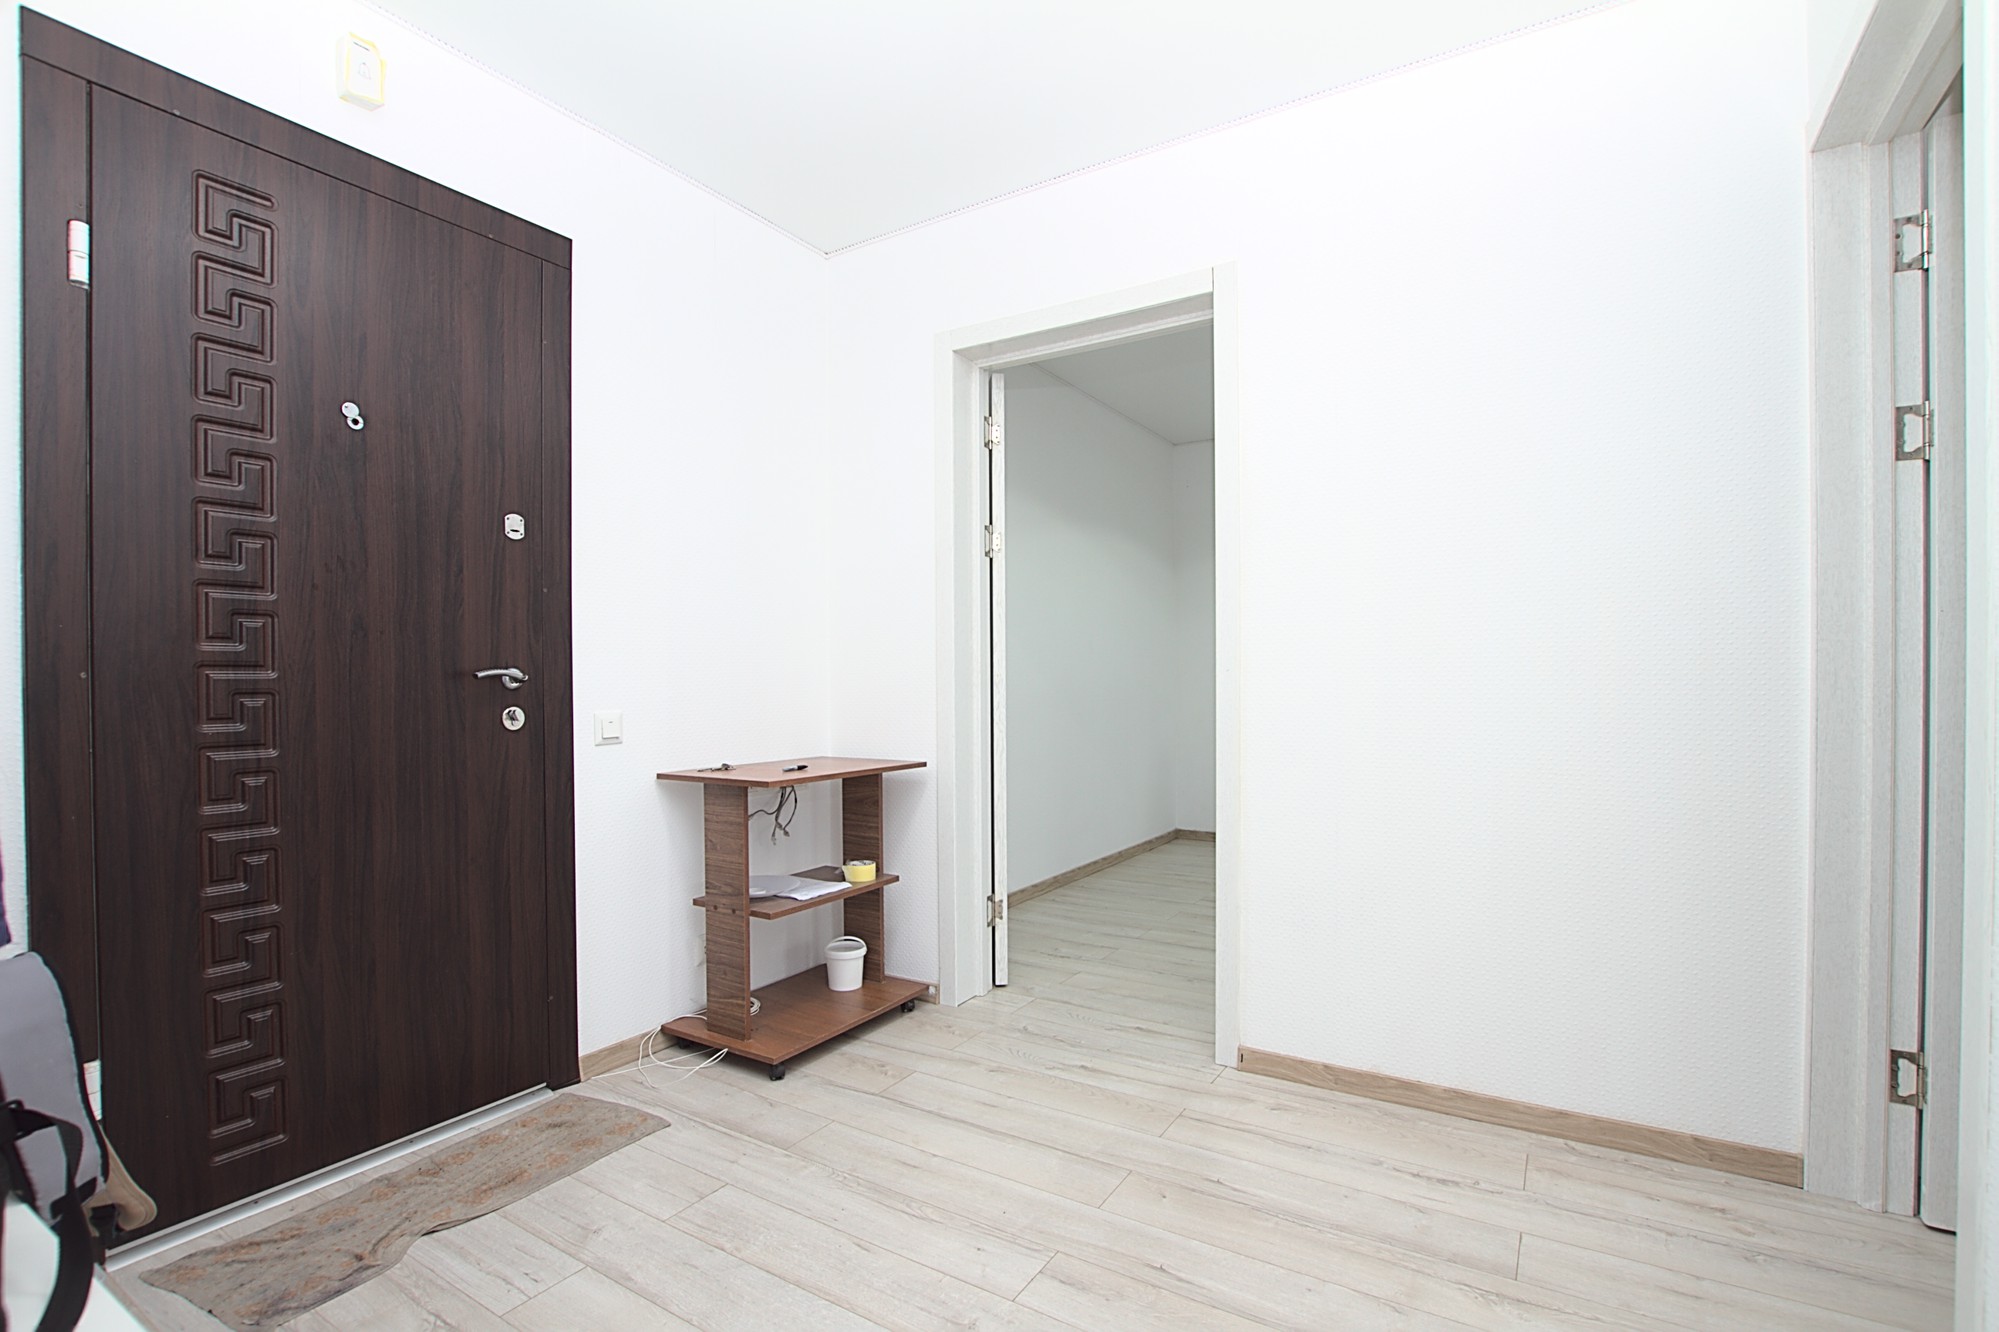 2 stanze in affitto a Chisinau, Bd. Traian 20